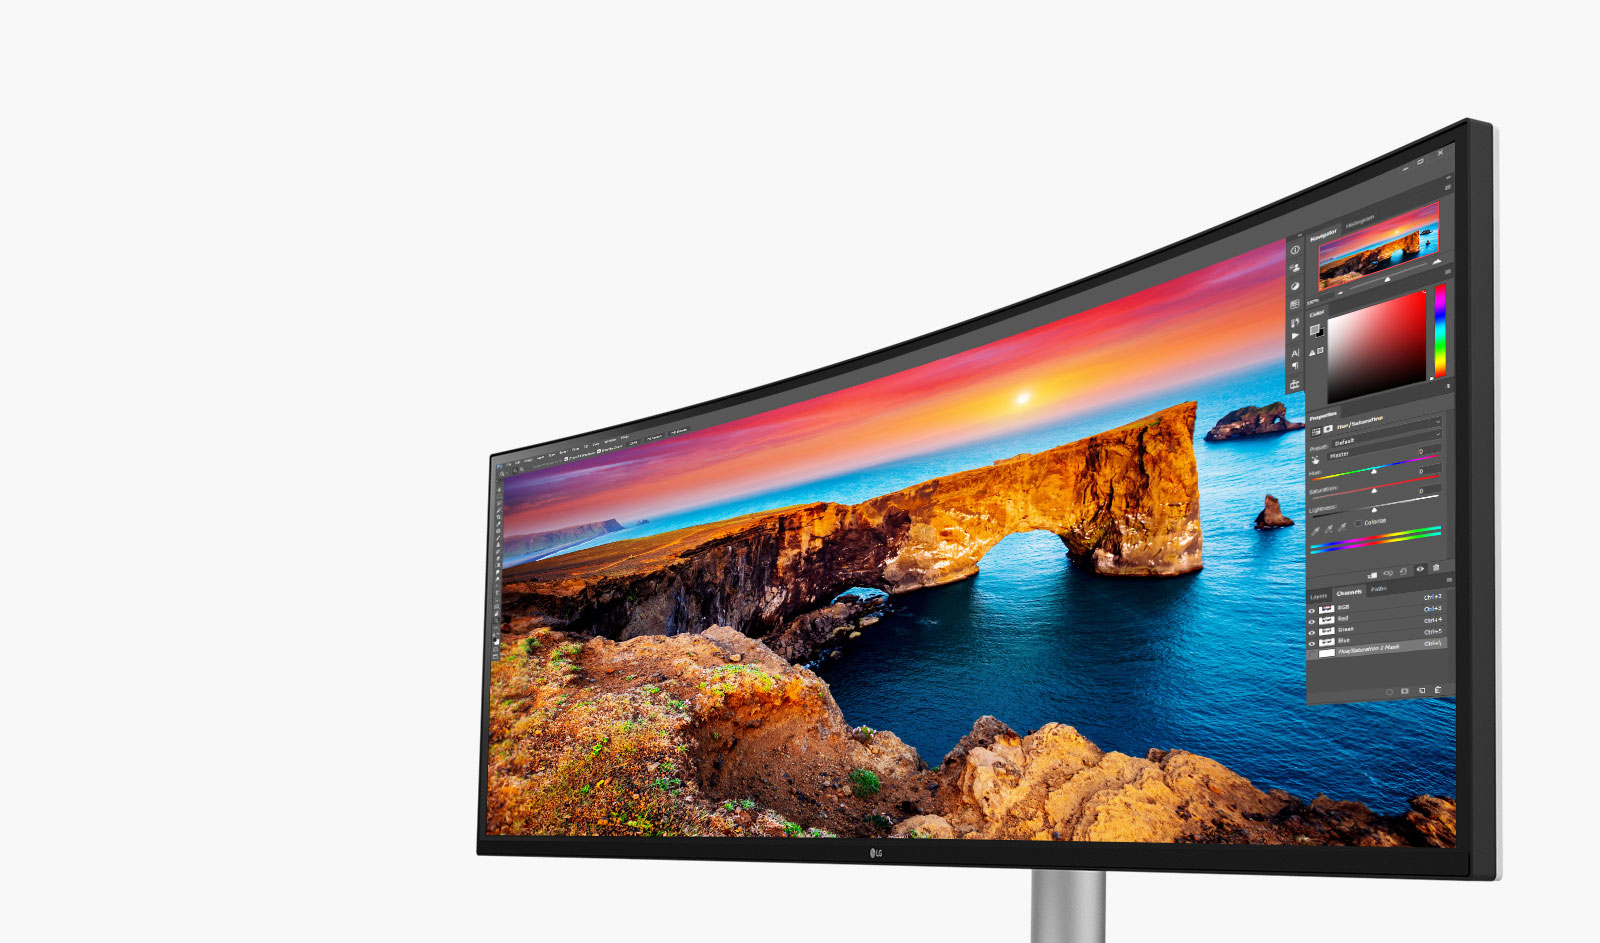 Ekran LG Nano IPS™ obsługuje szeroką gamę kolorów, 98% gamy DCI-P3, oraz zapewnia doskonałe odwzorowanie barw i świetną jasność dzięki technologii VESA Display HDR™400.